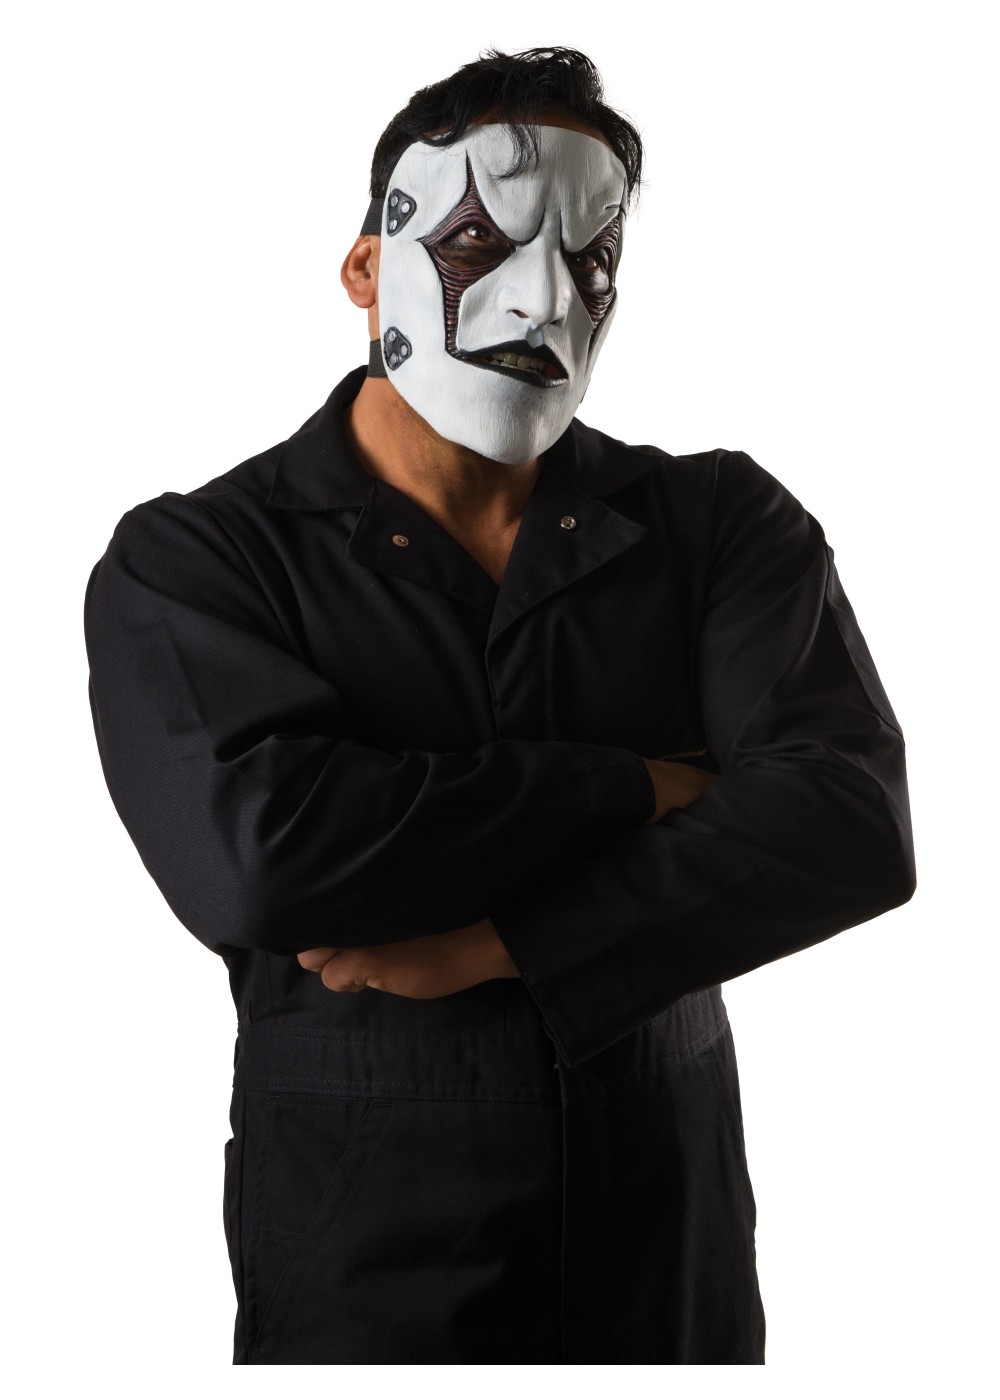 Slipknot Jim Root Mask